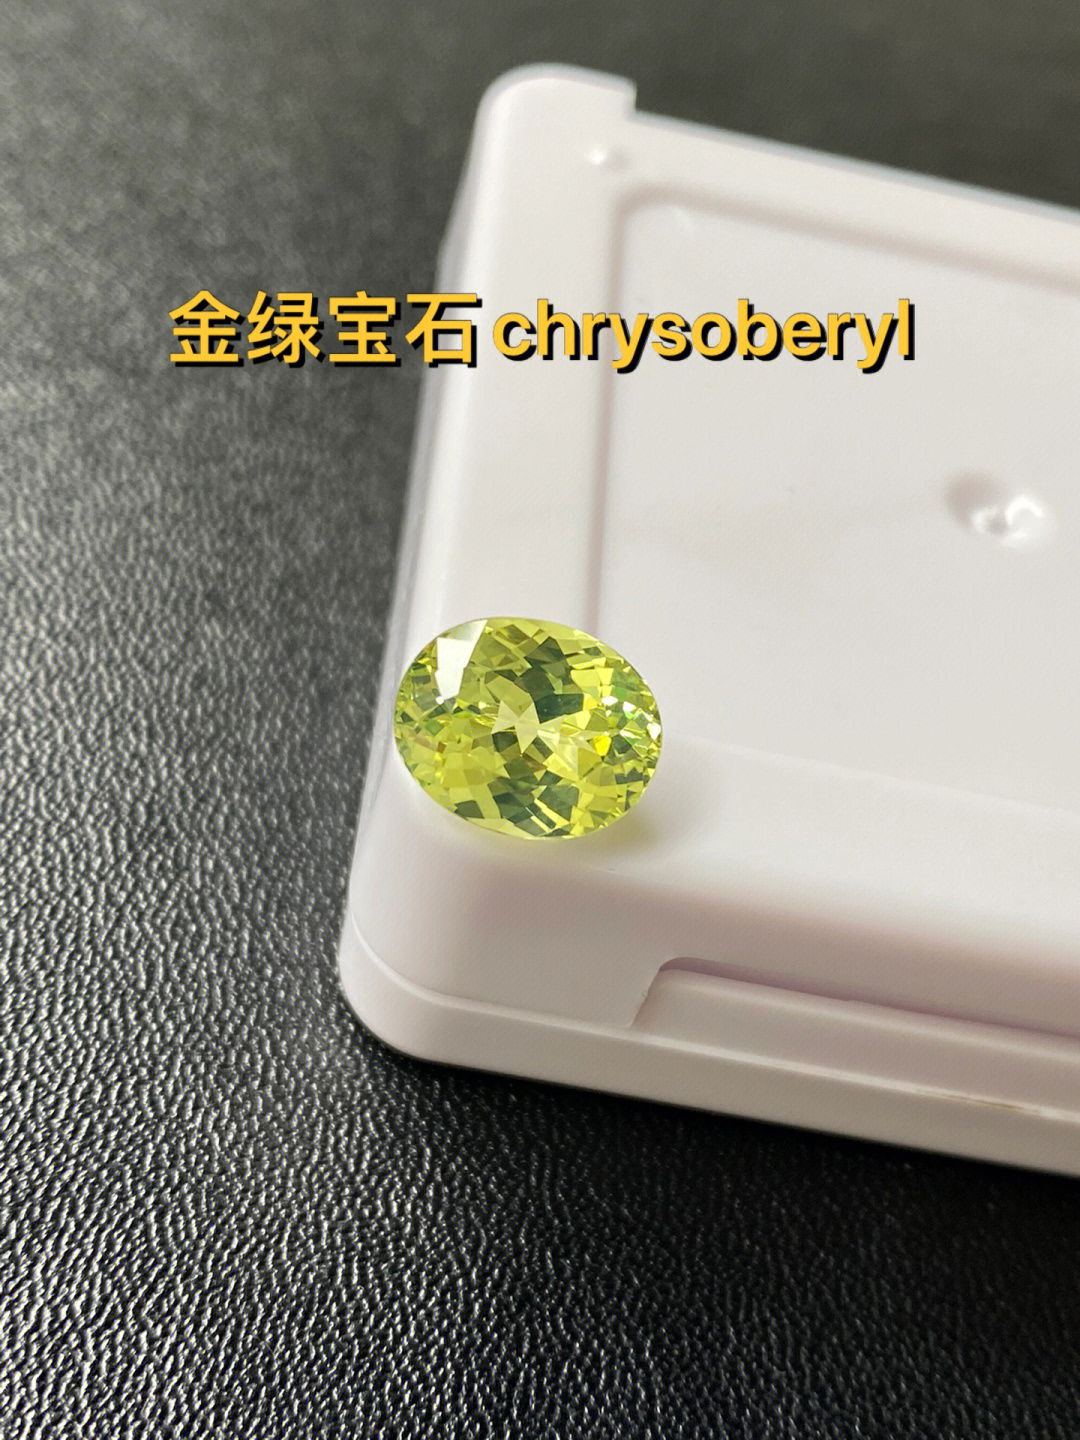 金绿宝石chrysoberyl近4克拉10倍镜下全净